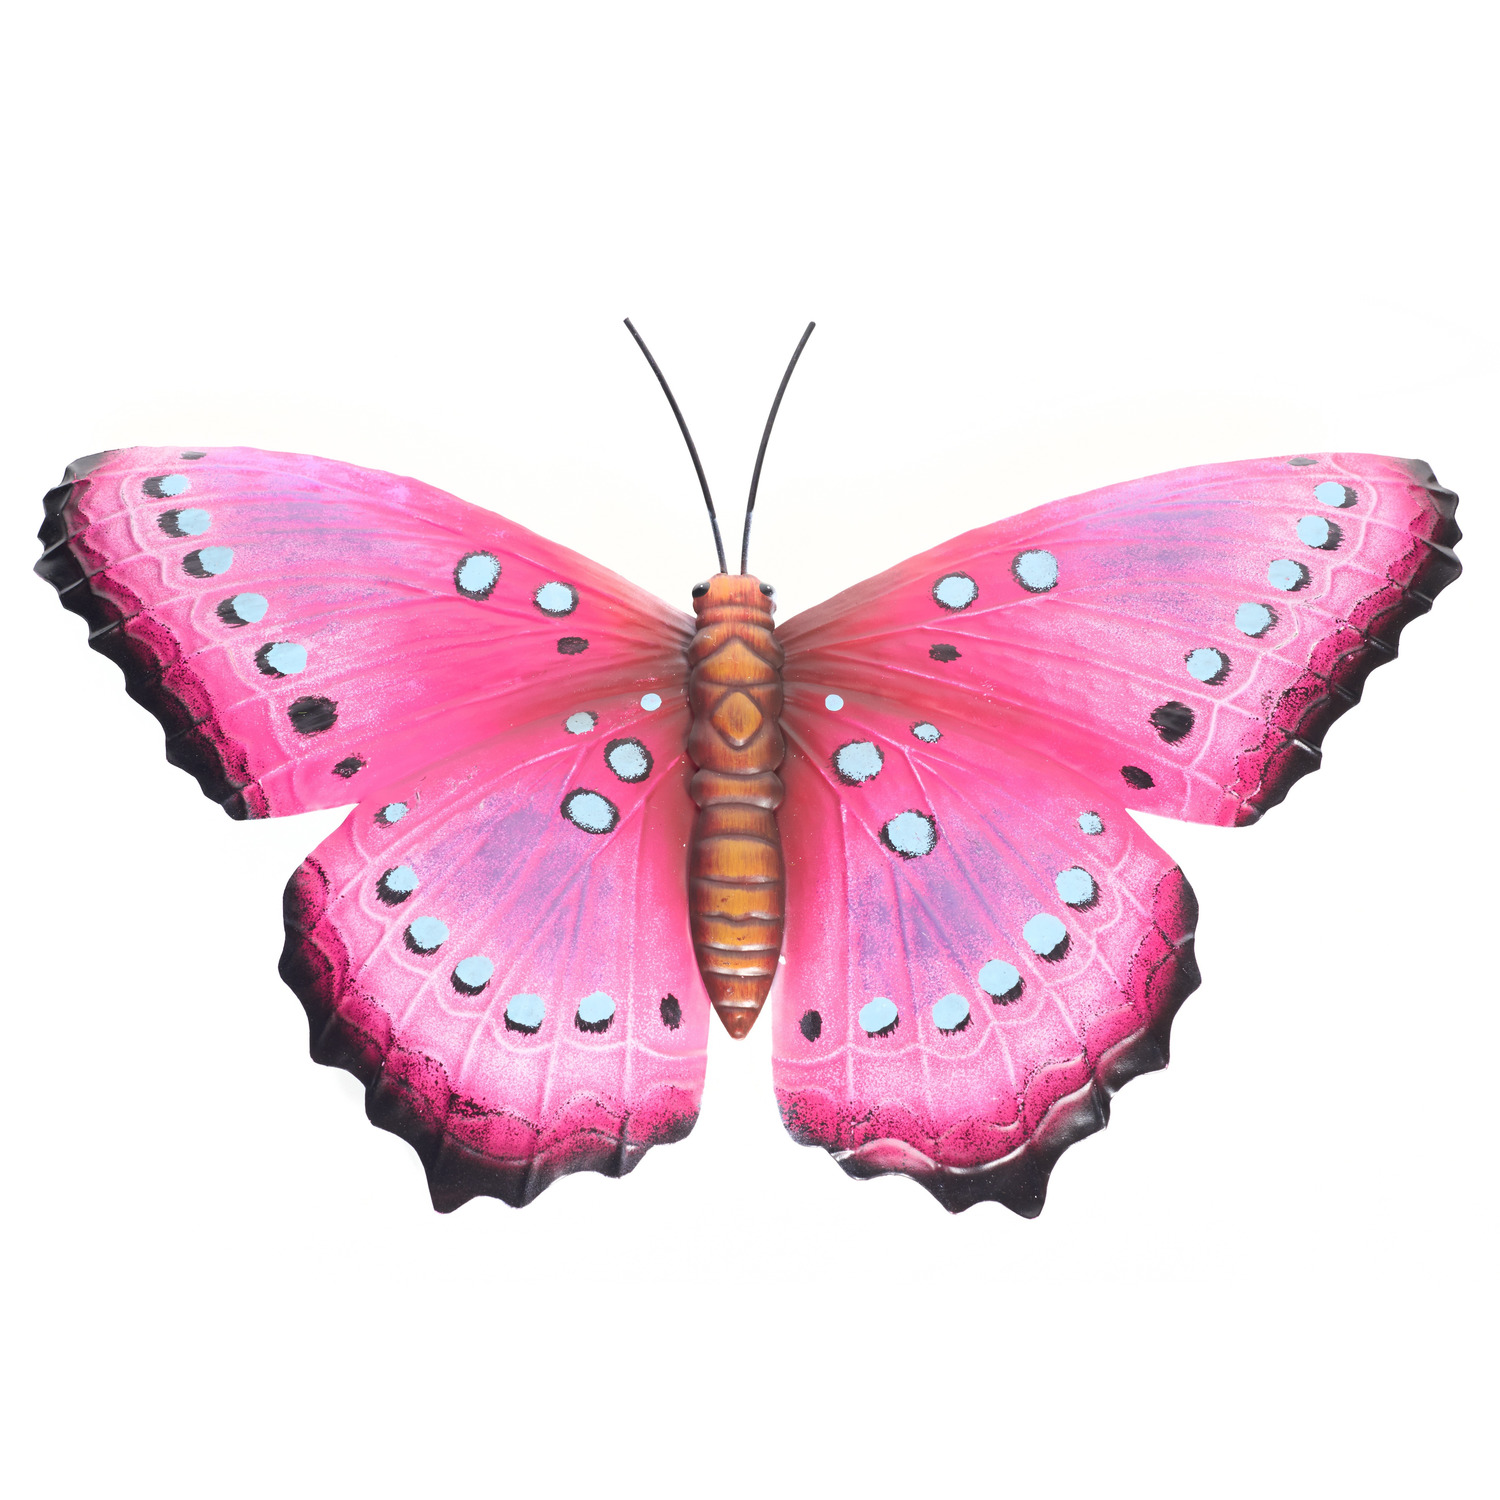 Tuindecoratie vlinder van metaal roze-zwart 48 cm